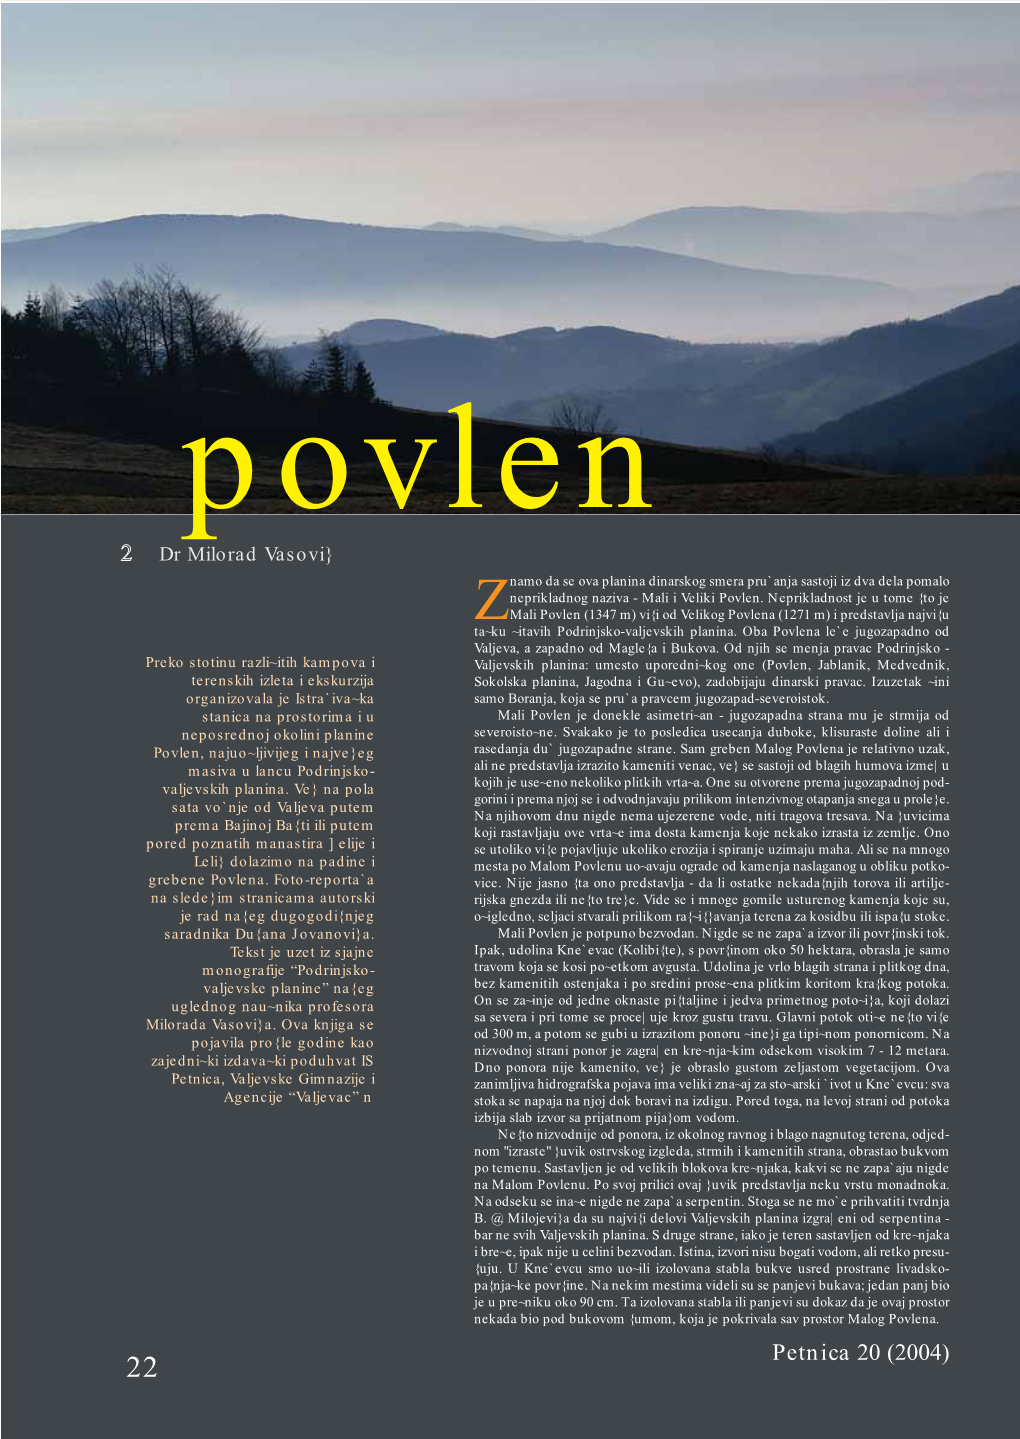 Mt Povlen Slojeva I Da One Presudno Deluju Na Stvaranje Ovakvih Jer Se Na Oba Kraja Ovog Puta Grade Vikendice